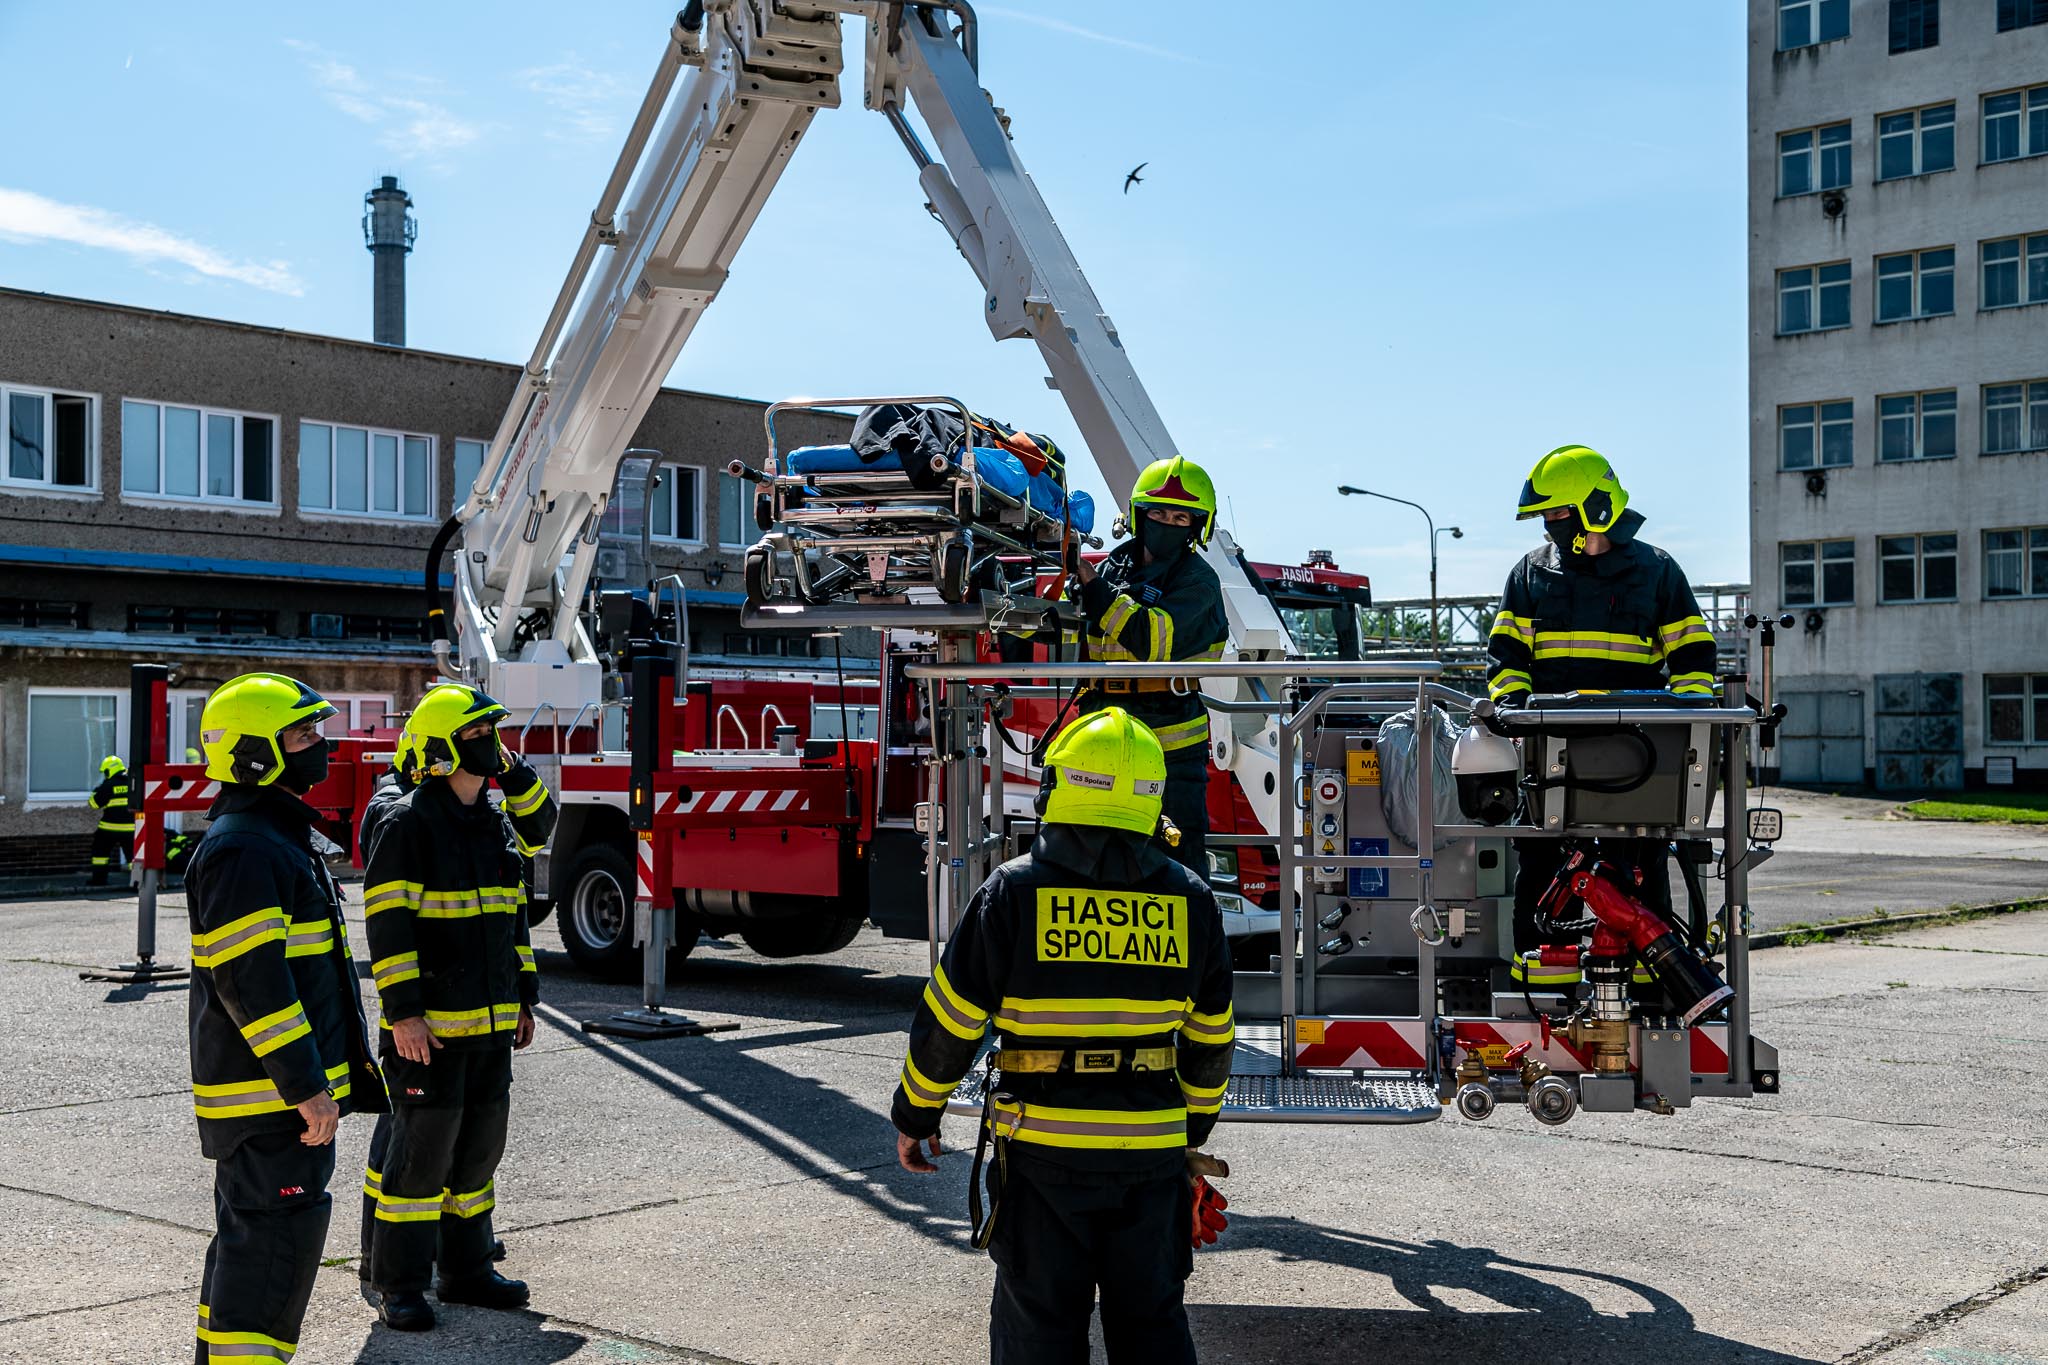 05 Novou zásahovou plošinu za 17 milionů korun budou hasiči ze Spolany využívat i při zásazích mimo areál.jpg